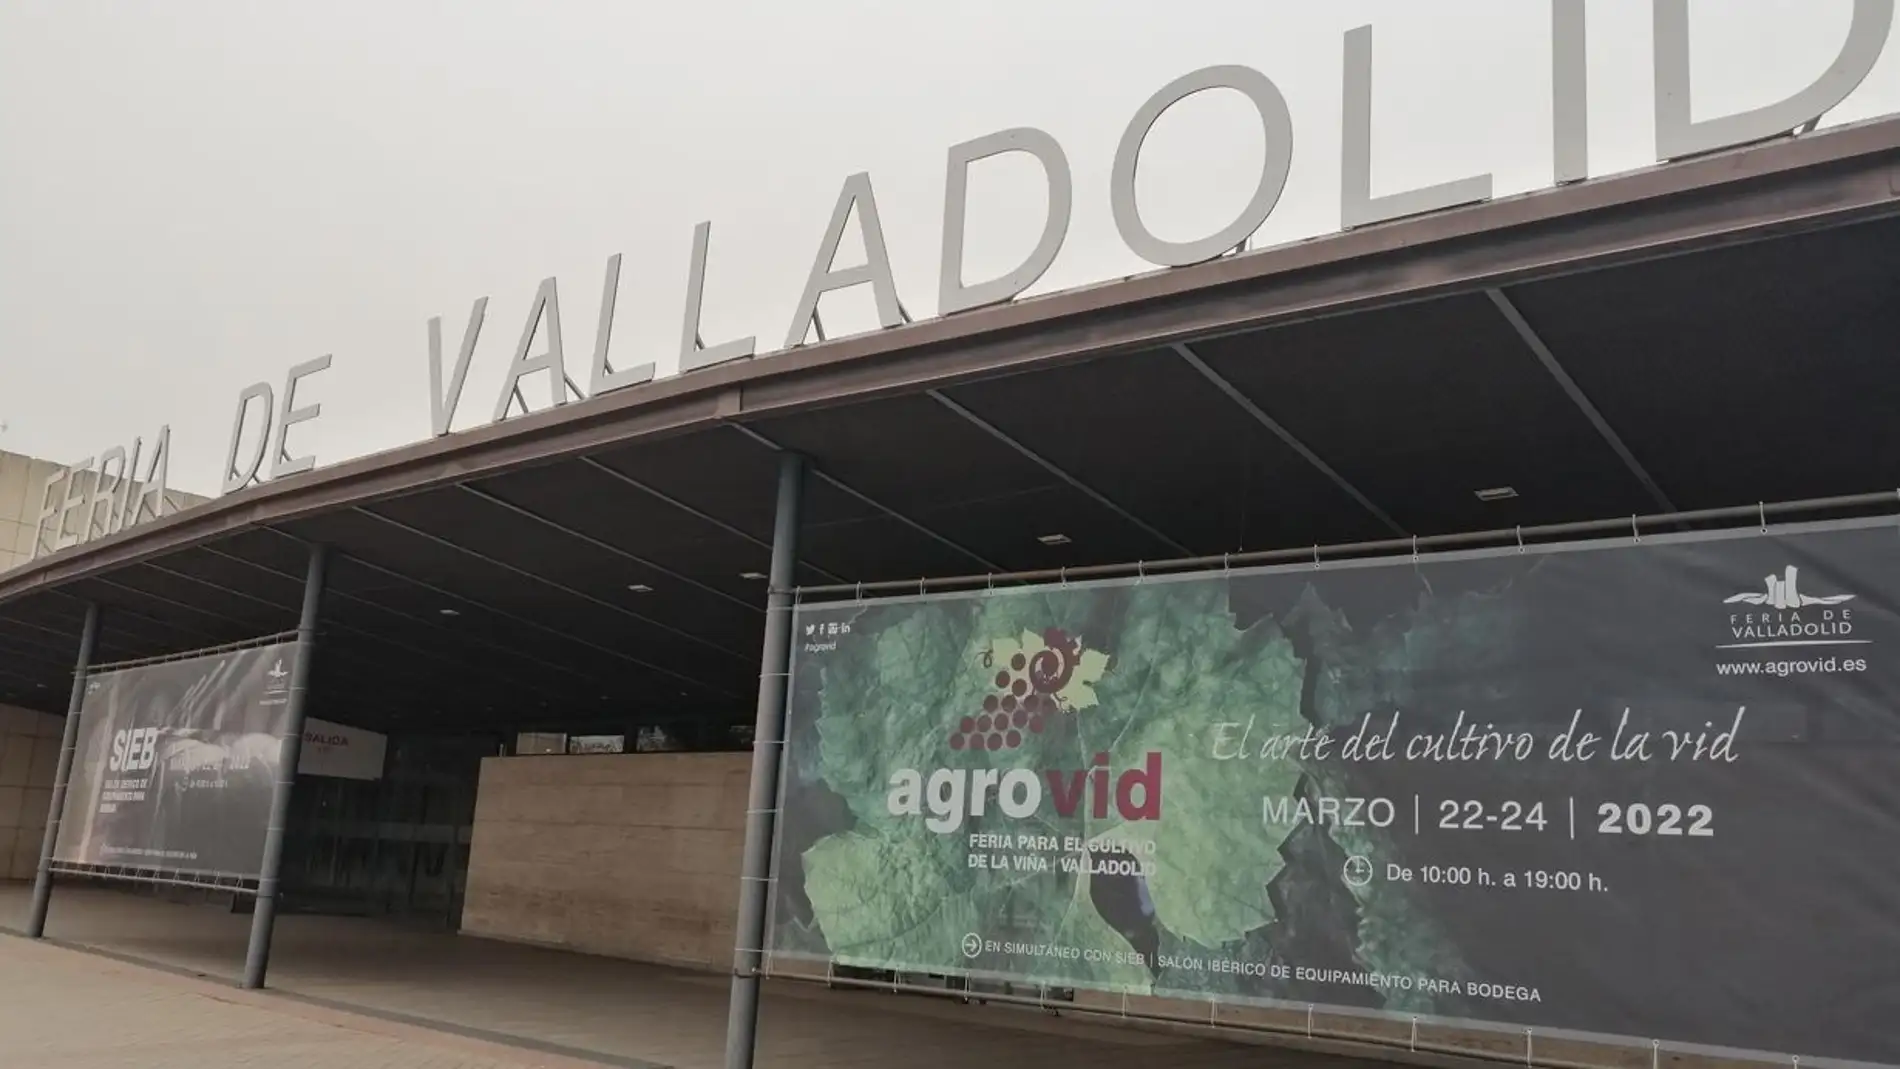 El sector vitivinícola tiene una cita en la Feria de Valladolid